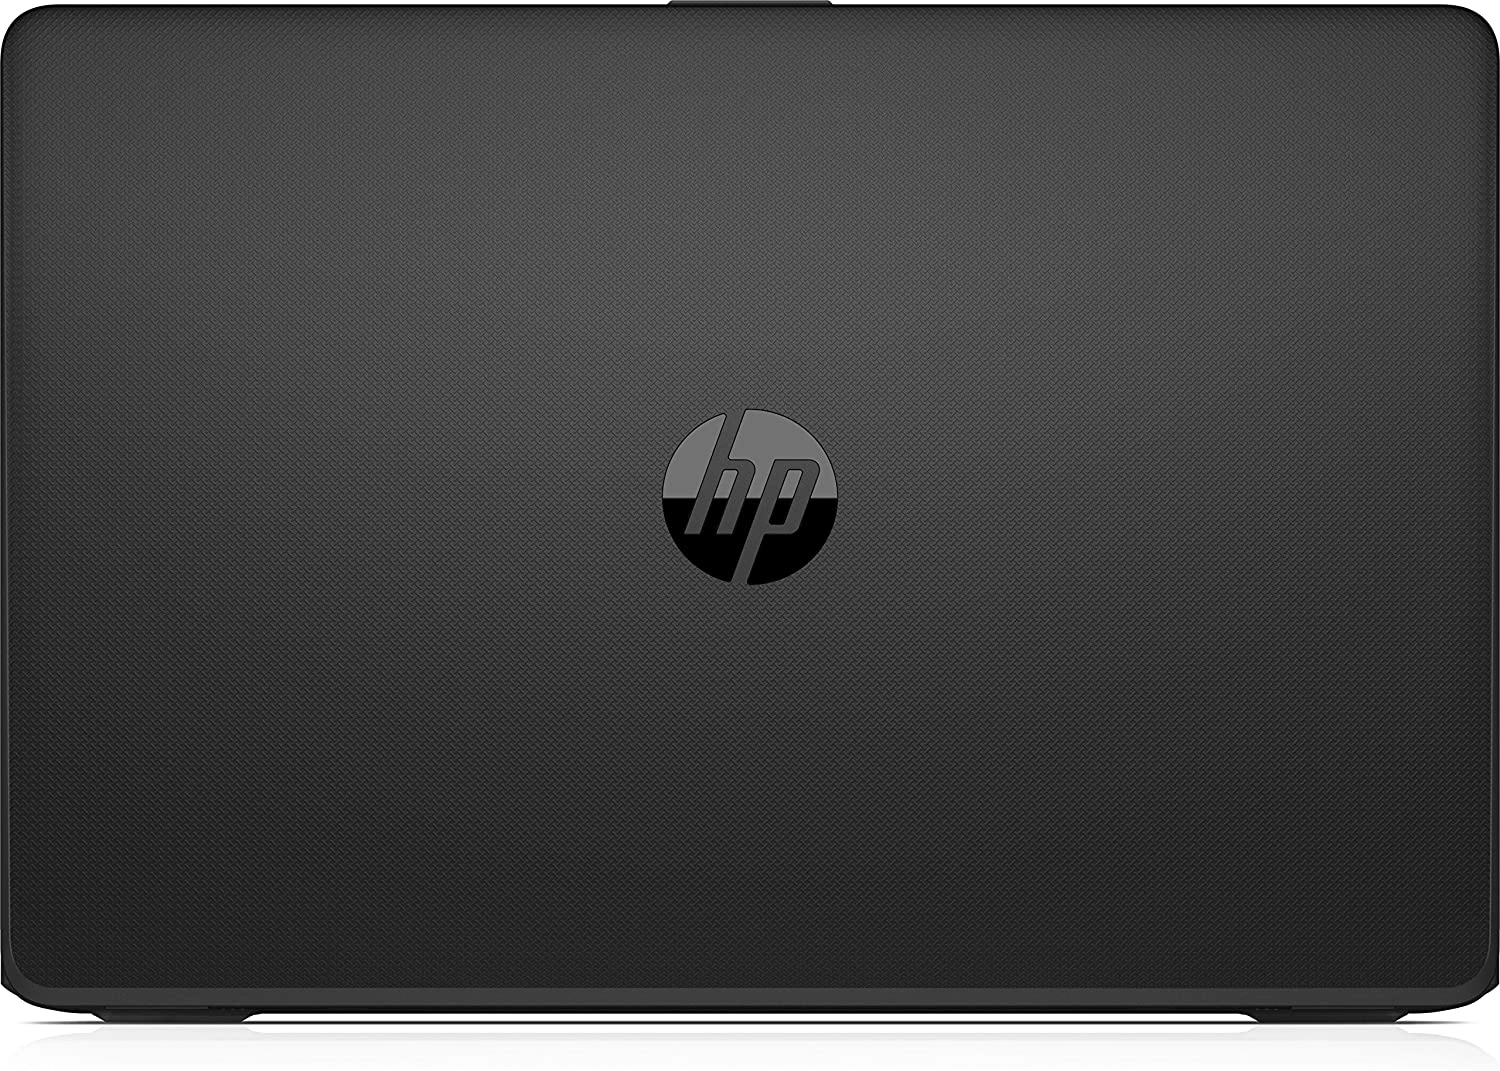 HP 15-bw059ns laptop image